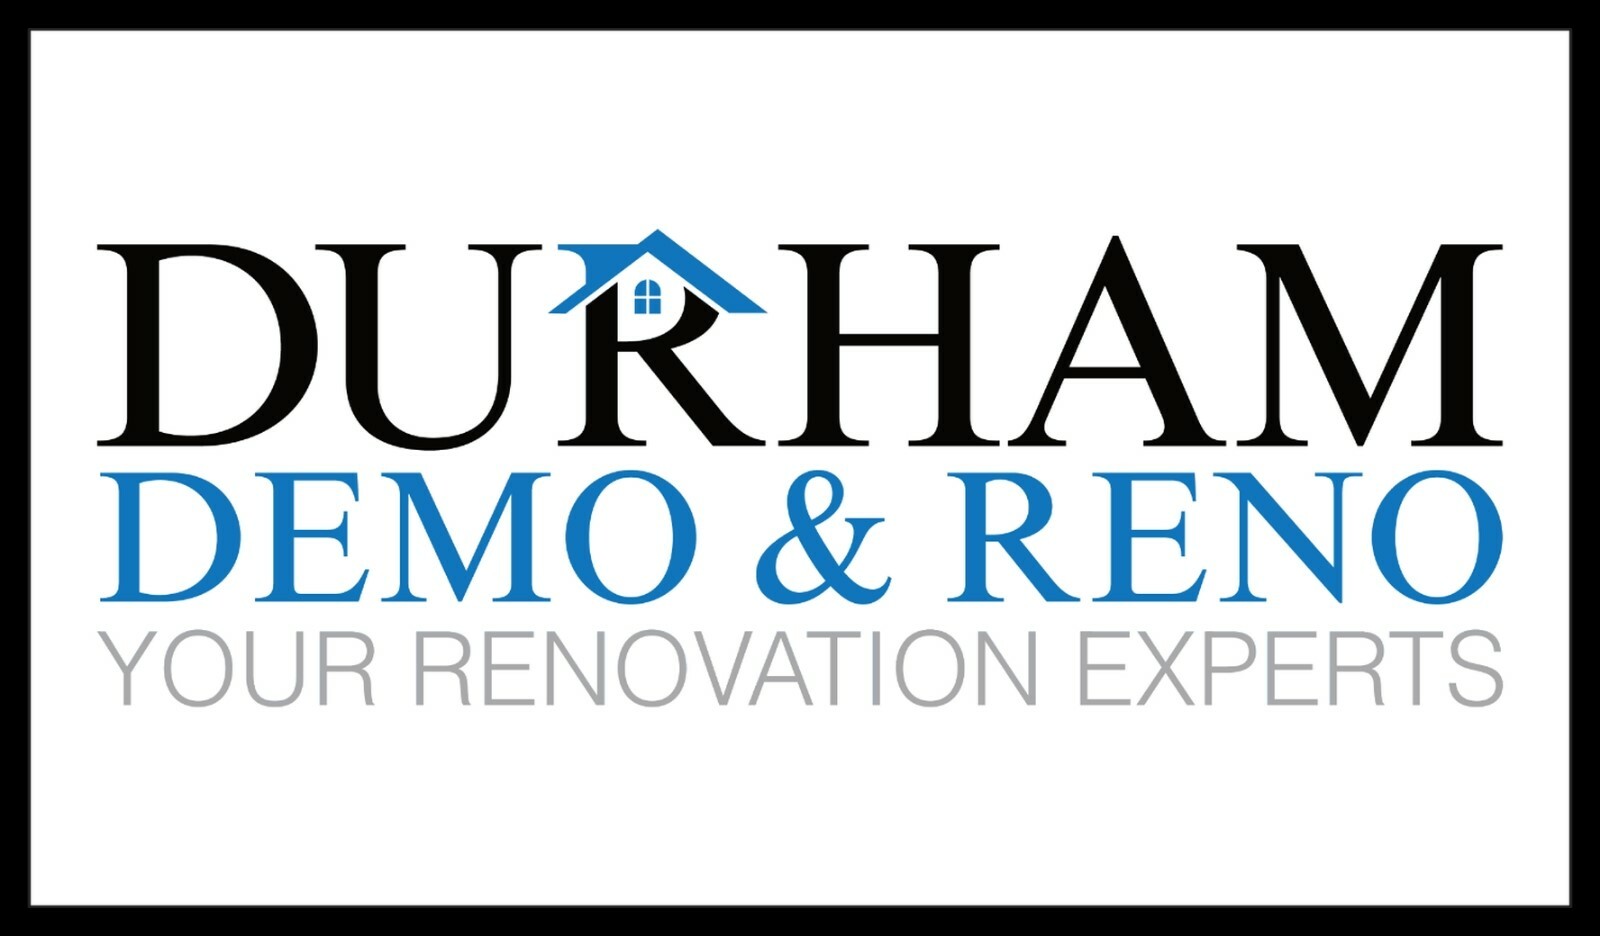 Durham Demo & Reno's logo